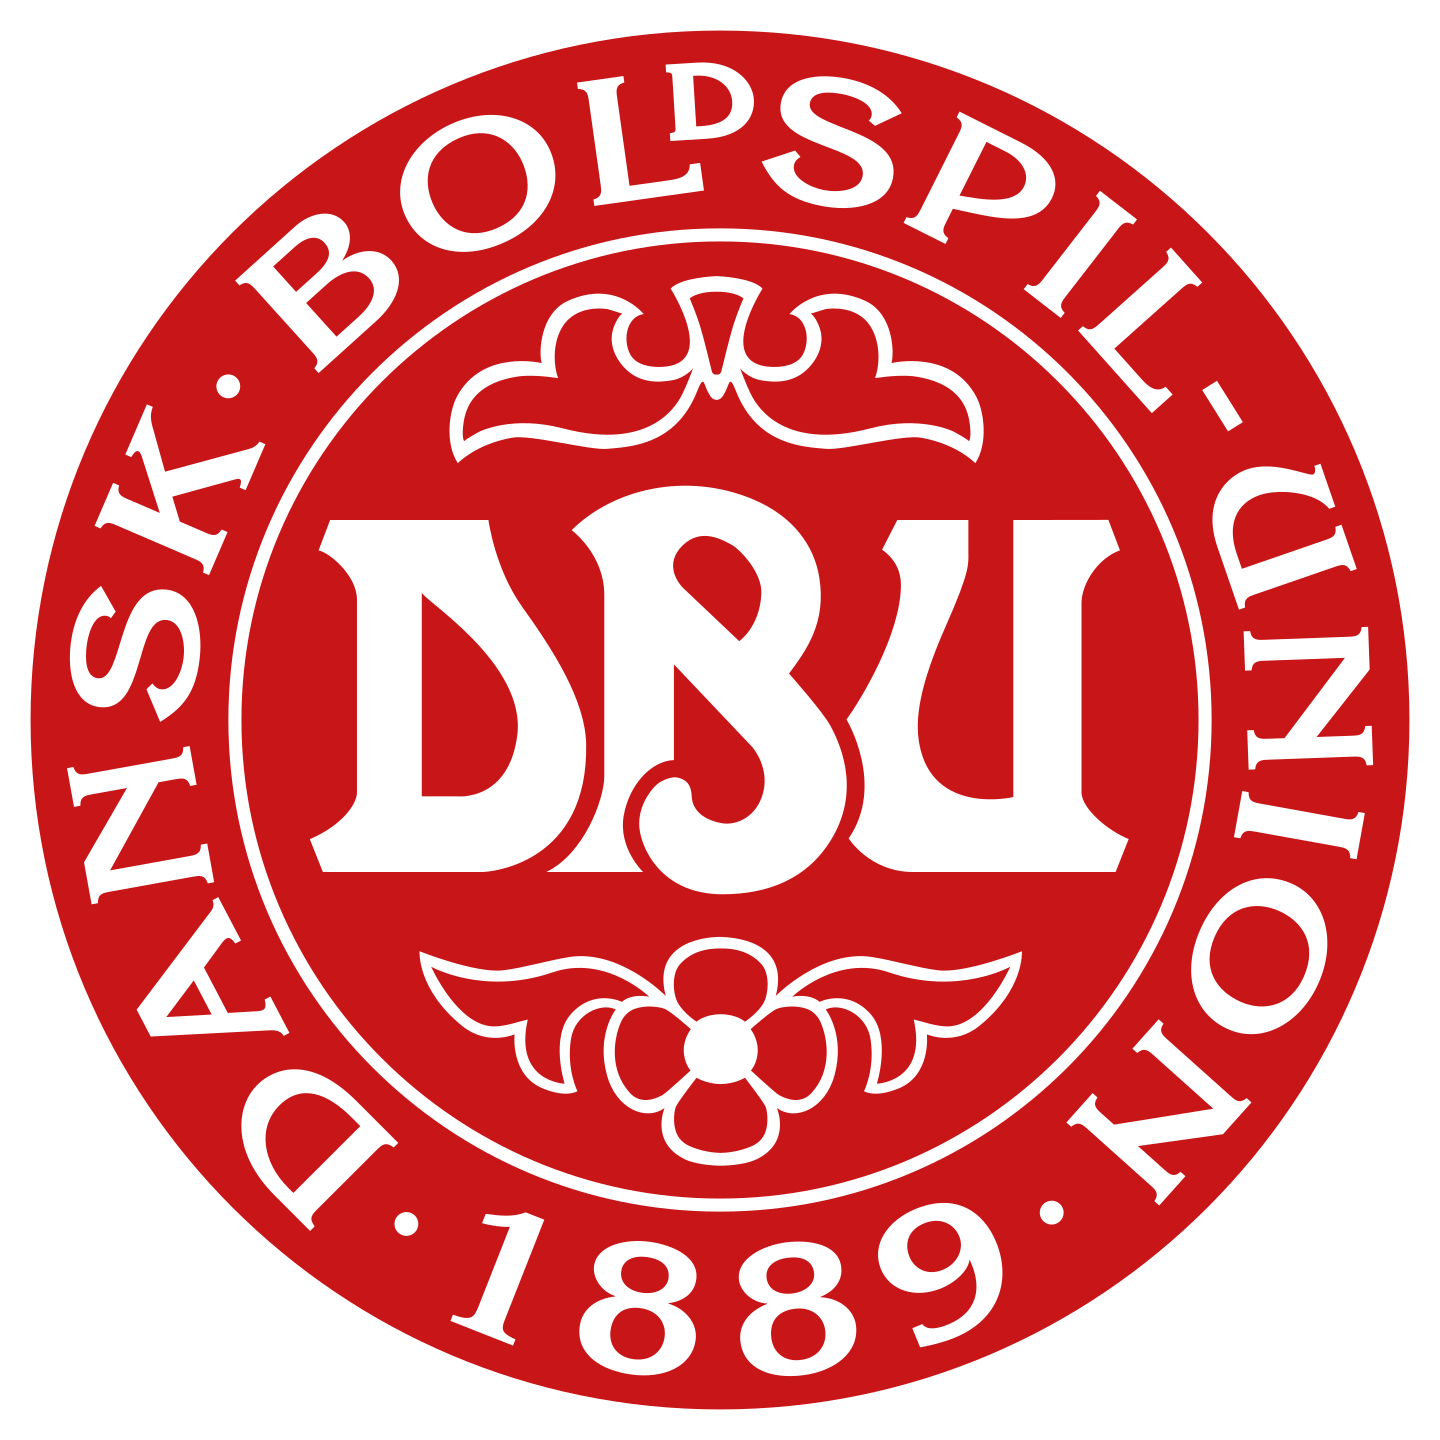 denmark national football team logo 2 - Denmark National Football Team Logo